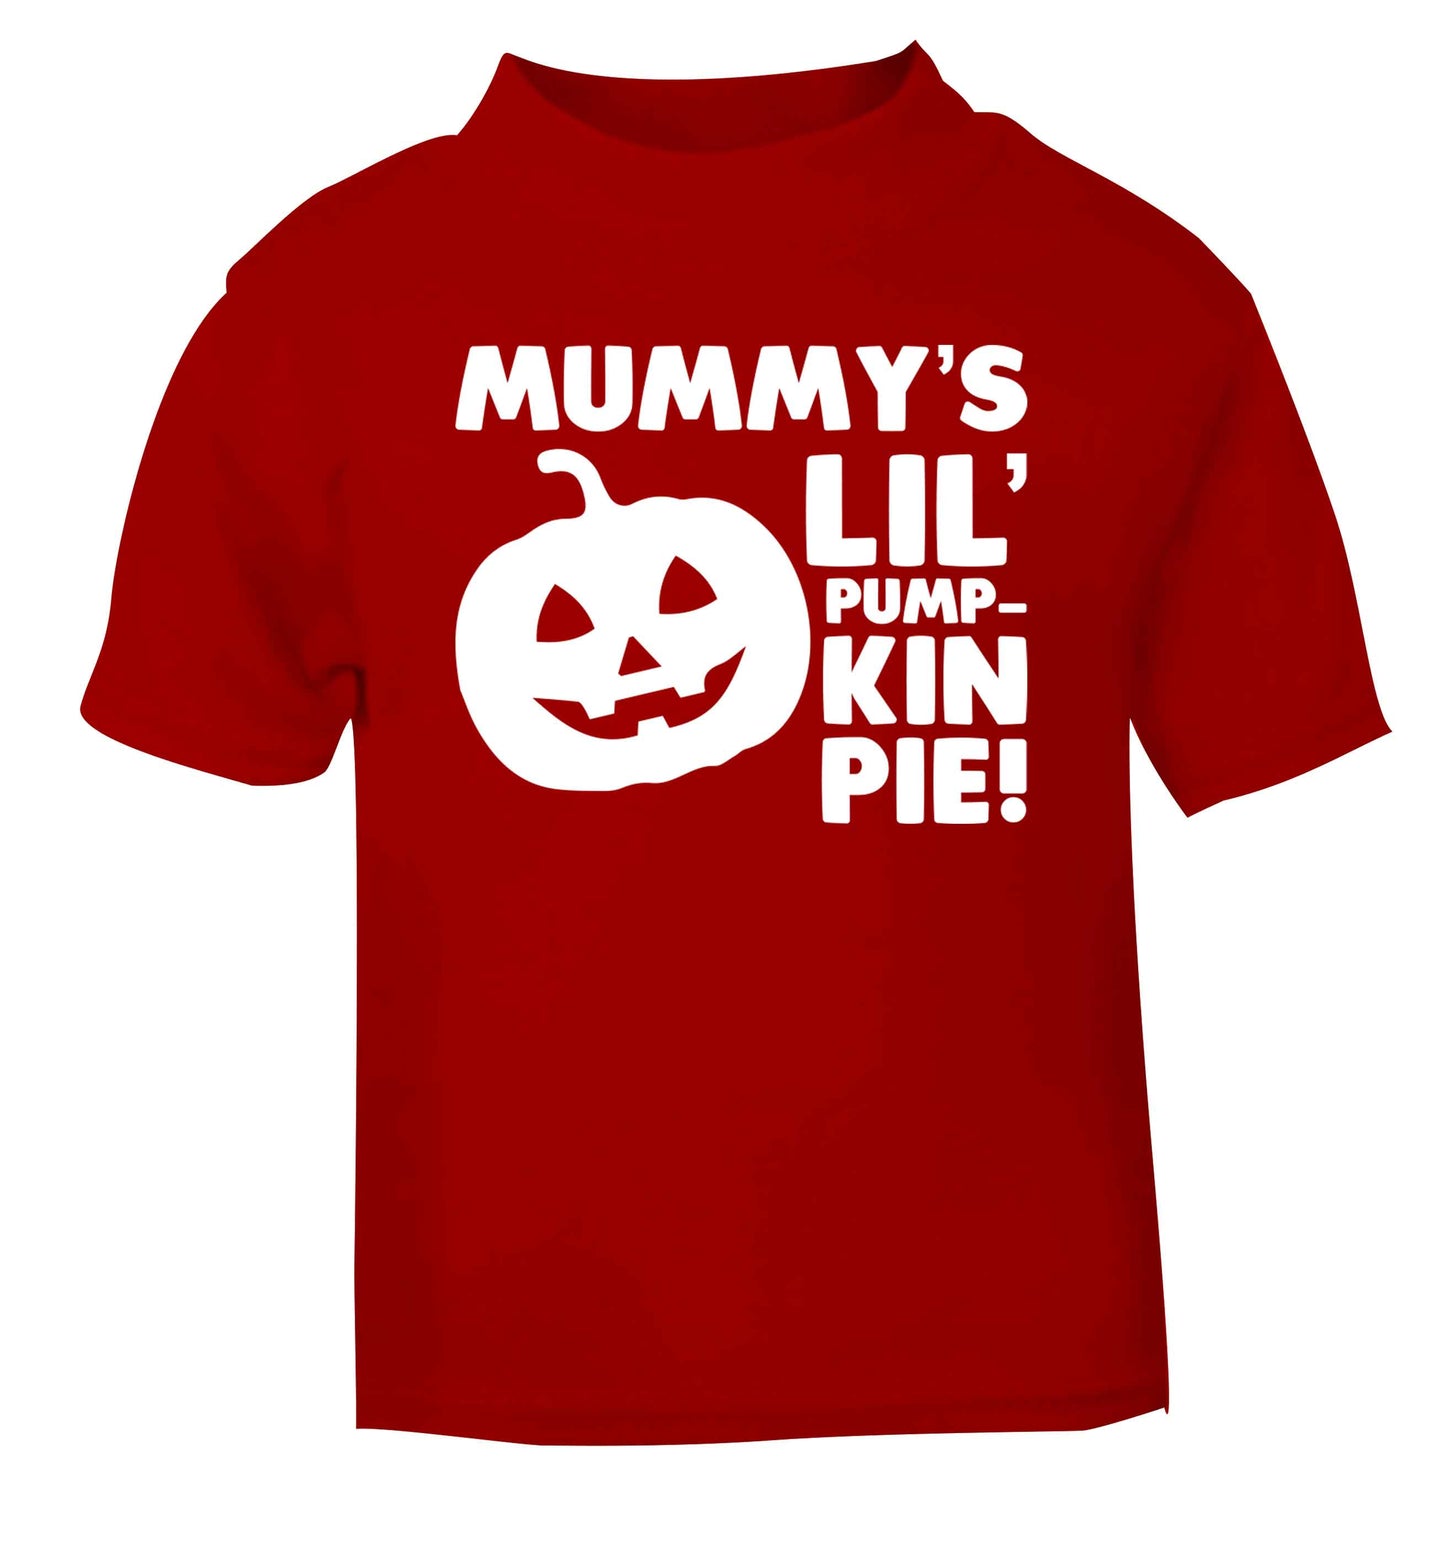 Mummy's lil' pumpkin pie red baby toddler Tshirt 2 Years